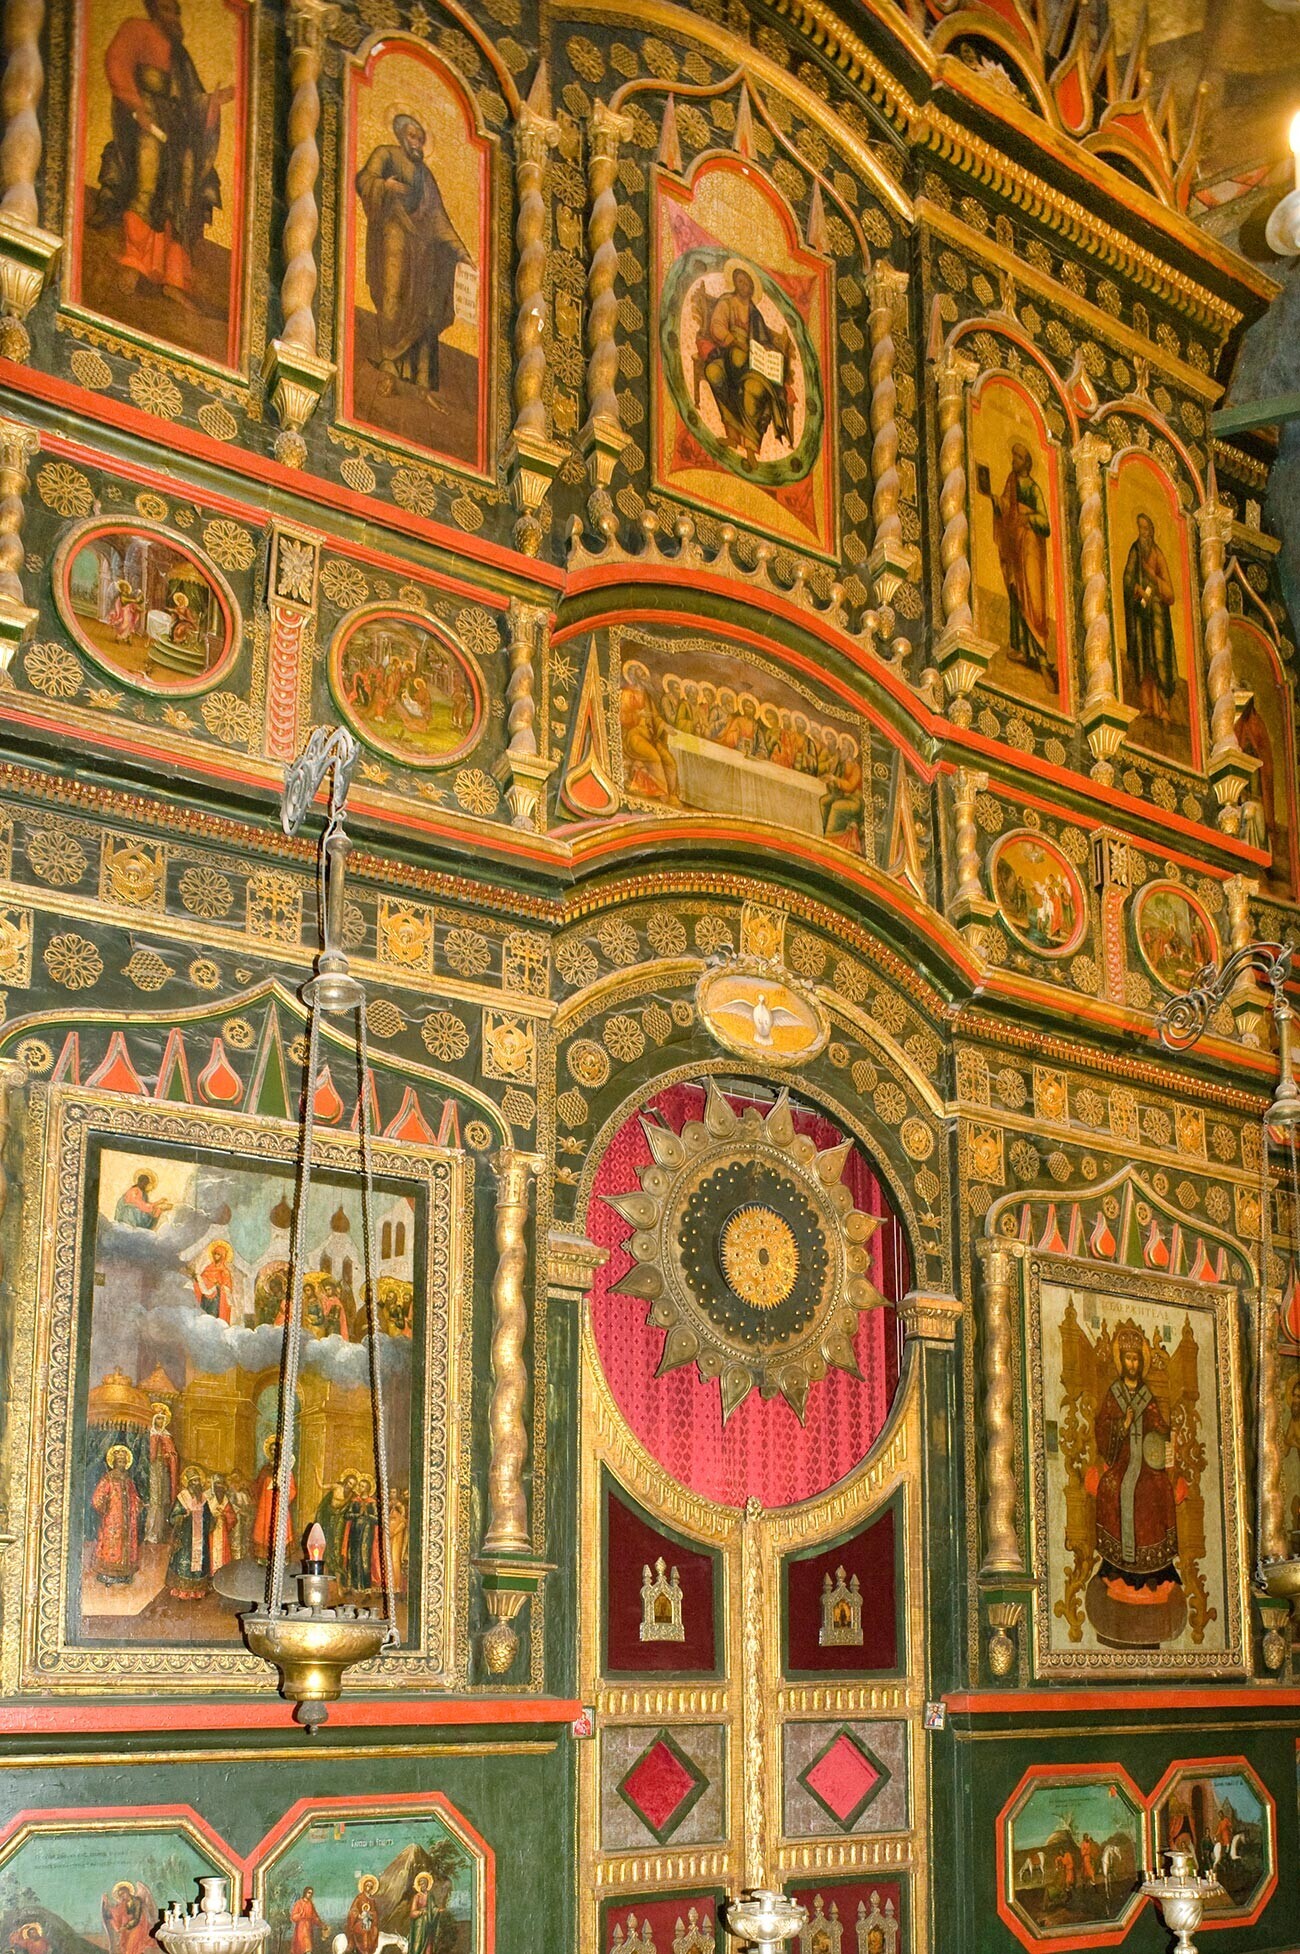 Katedrala Vasilija Blaženega. Pokrovska cerkev, severni portal. 2. junij 2012
